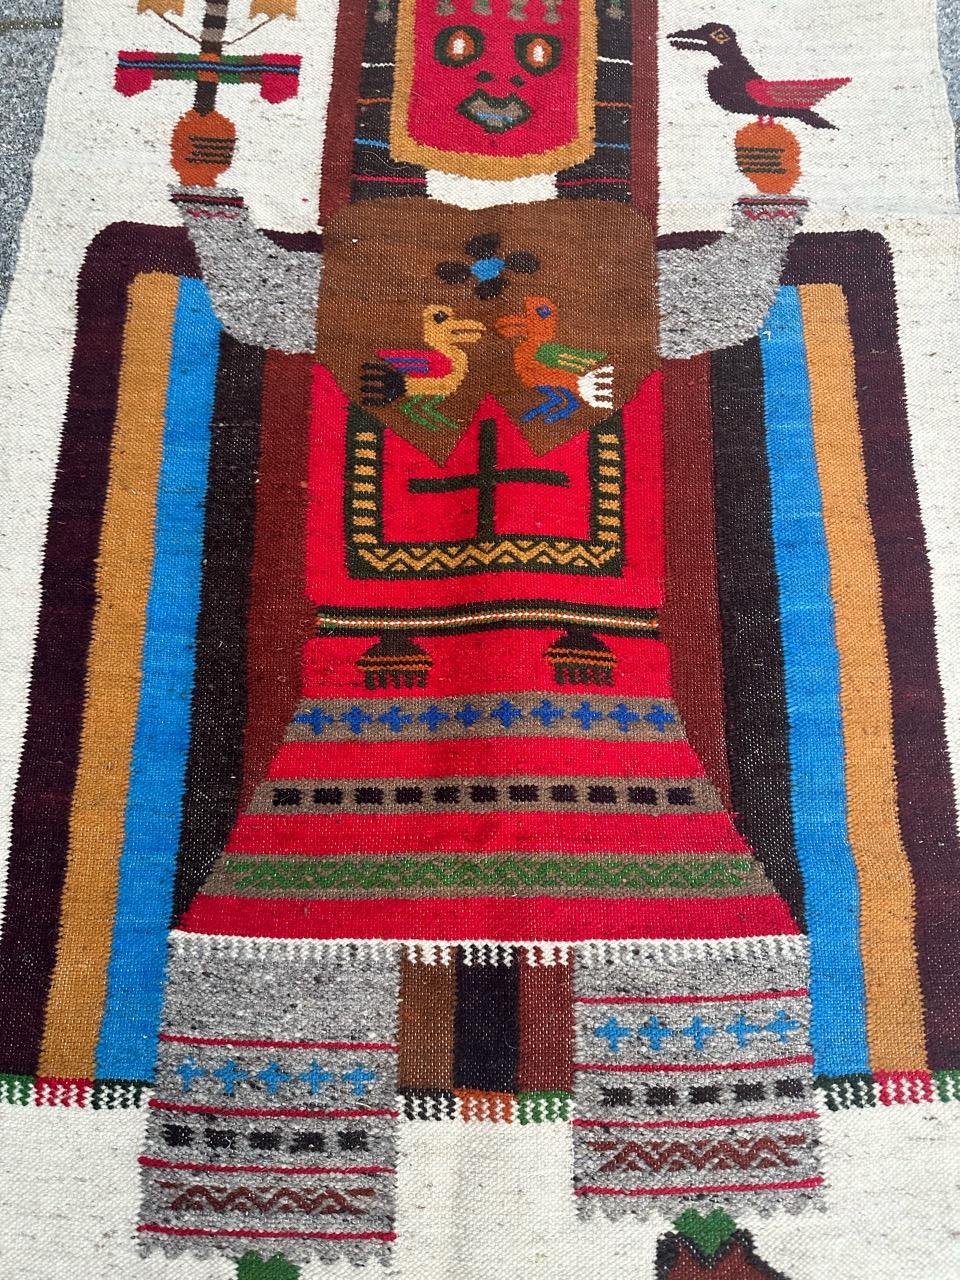 Jolie tapisserie sud-américaine du milieu du siècle, avec un beau design et de belles couleurs. 
Découvrez le charme de cette tapisserie équatorienne vintage tissée à la main, qui présente un motif tribal captivant - 